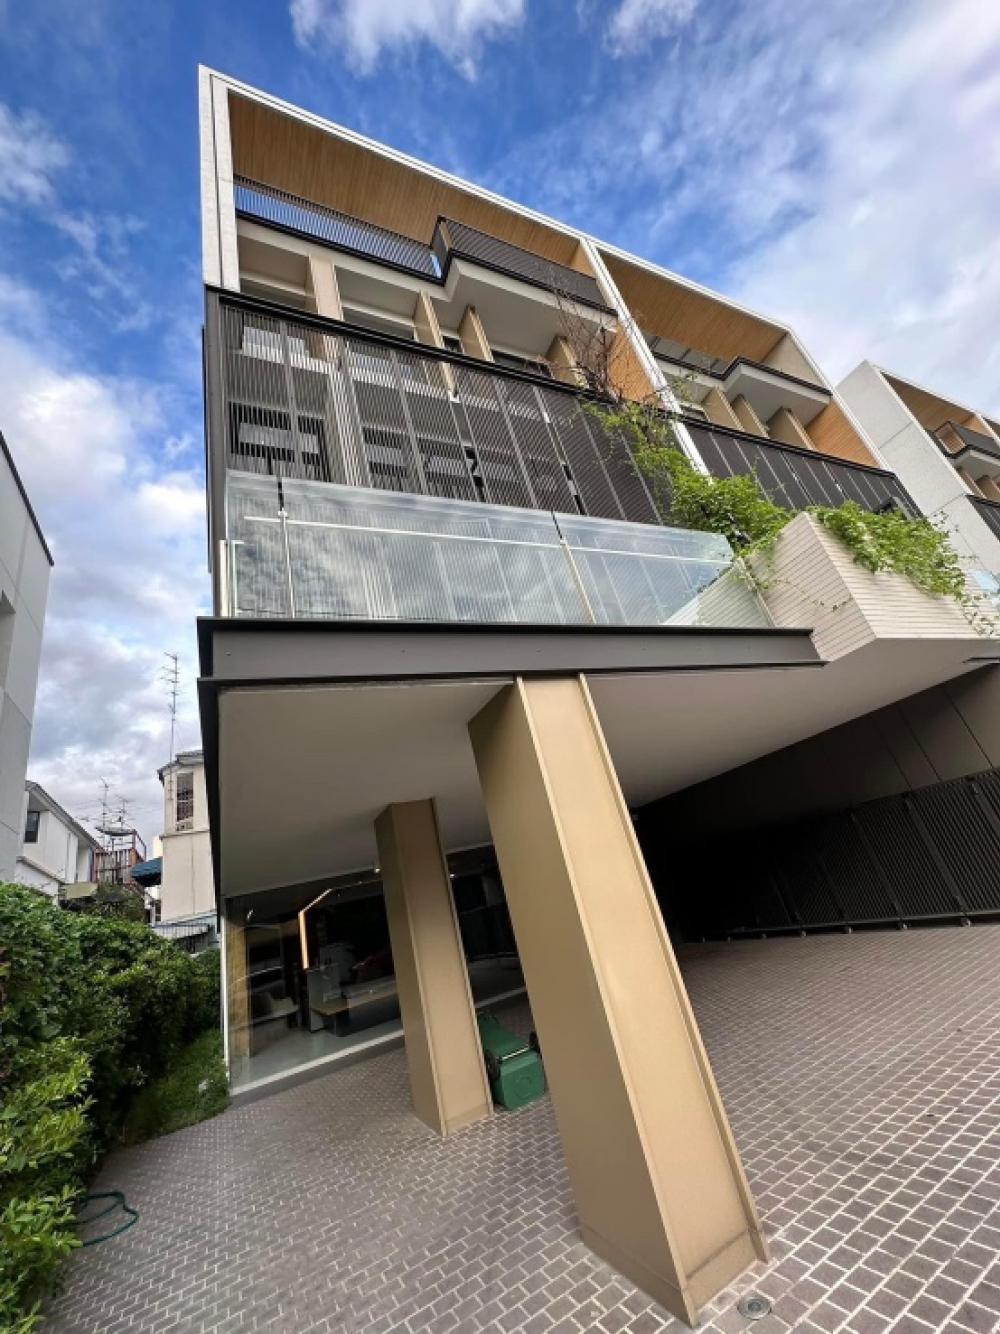 ให้เช่าร้านค้า ร้านอาหารพระราม 9 เพชรบุรีตัดใหม่ RCA : Rental : Home Office In Rama 9 with Full Furnitures , Private Lift , 560 sqm 60 sqw , 5 Storeys 6 Bath 🔥🔥Rental Price : 250,000 THB / Month 🔥🔥#superluxuryhousebkk #Ultraluxurycondo #luxuryhousebangkok #superluxurycondoforsale #อสังหาริมทย์ทรัพย์ #realesta